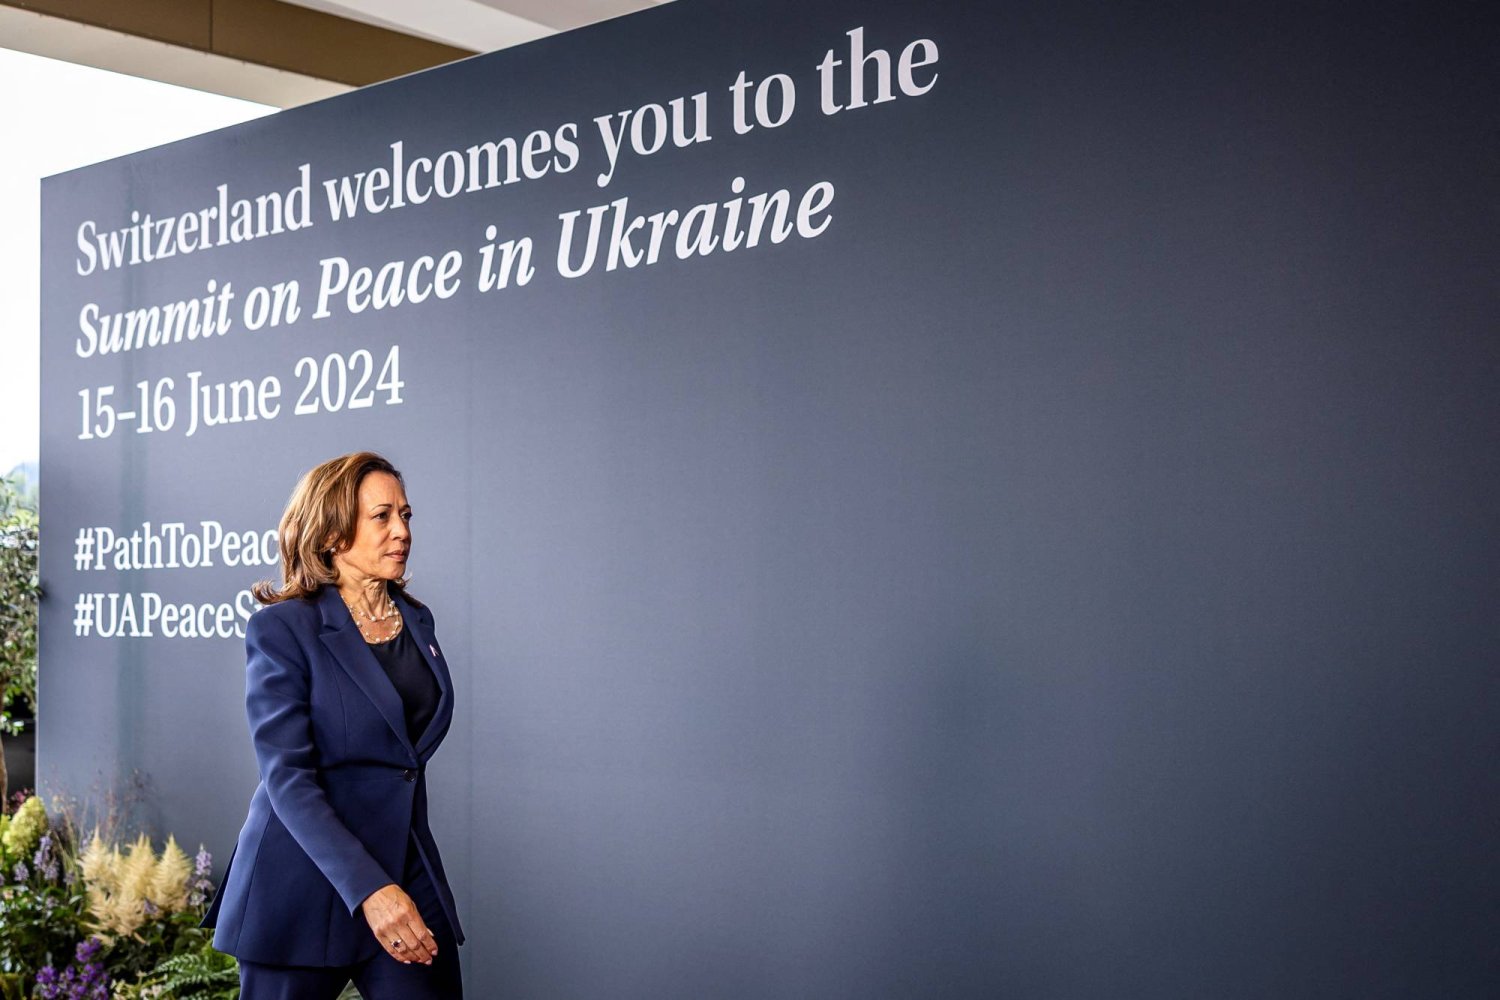 واشنطن تعلن عن مساعدات لأوكرانيا بقيمة 1.5 مليار دولار